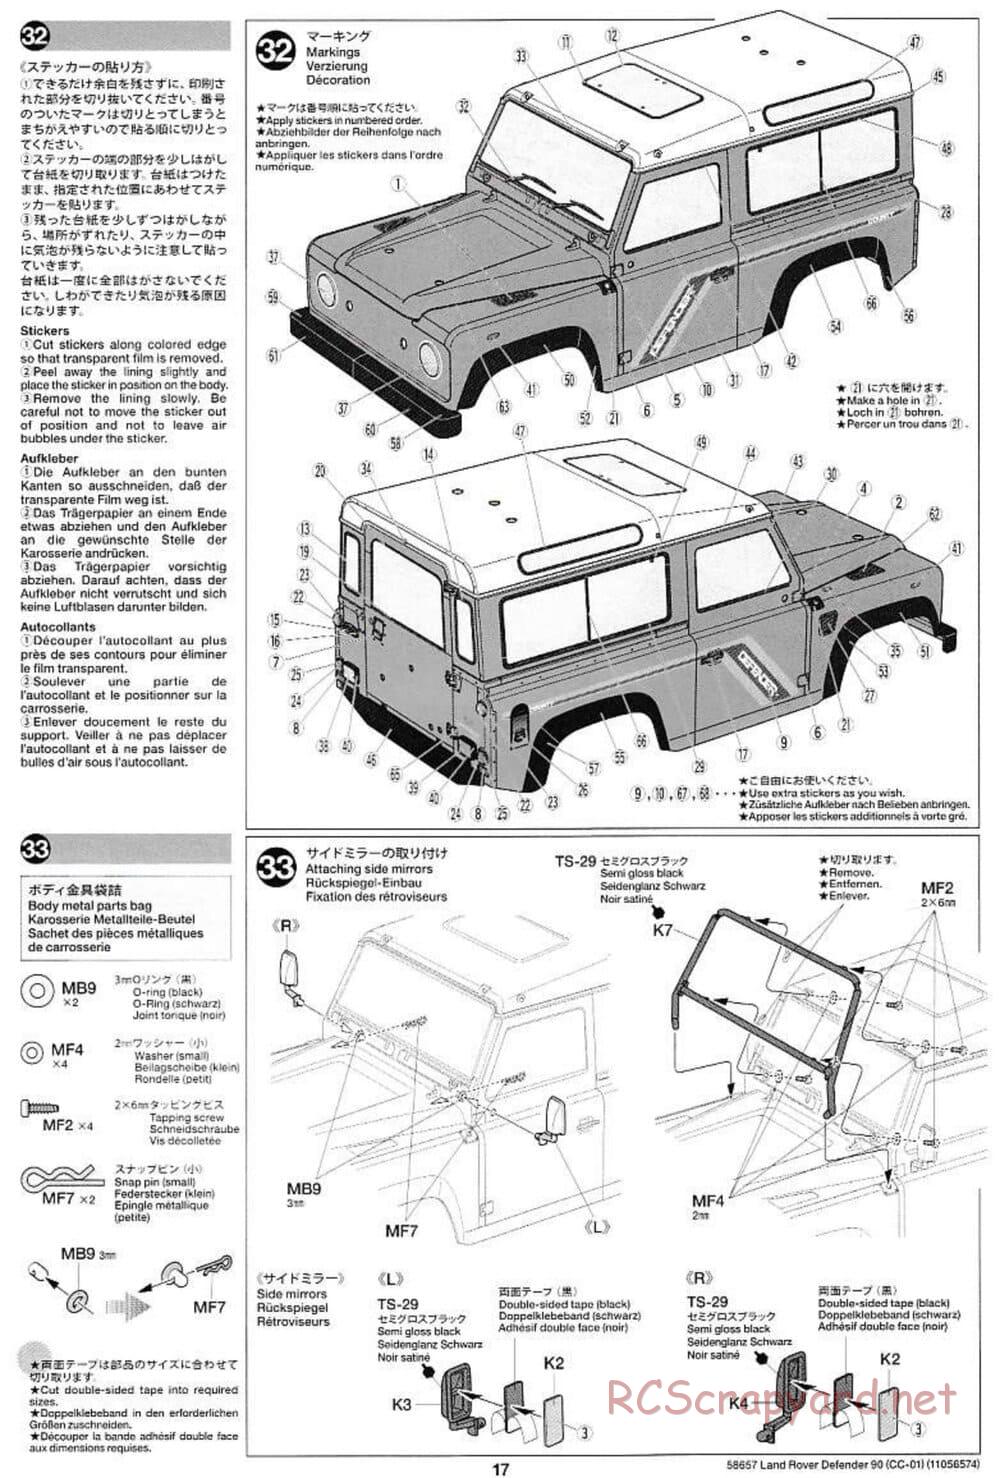 Tamiya - Land Rover Defender 90 - CC-01 Chassis - Manual - Page 17